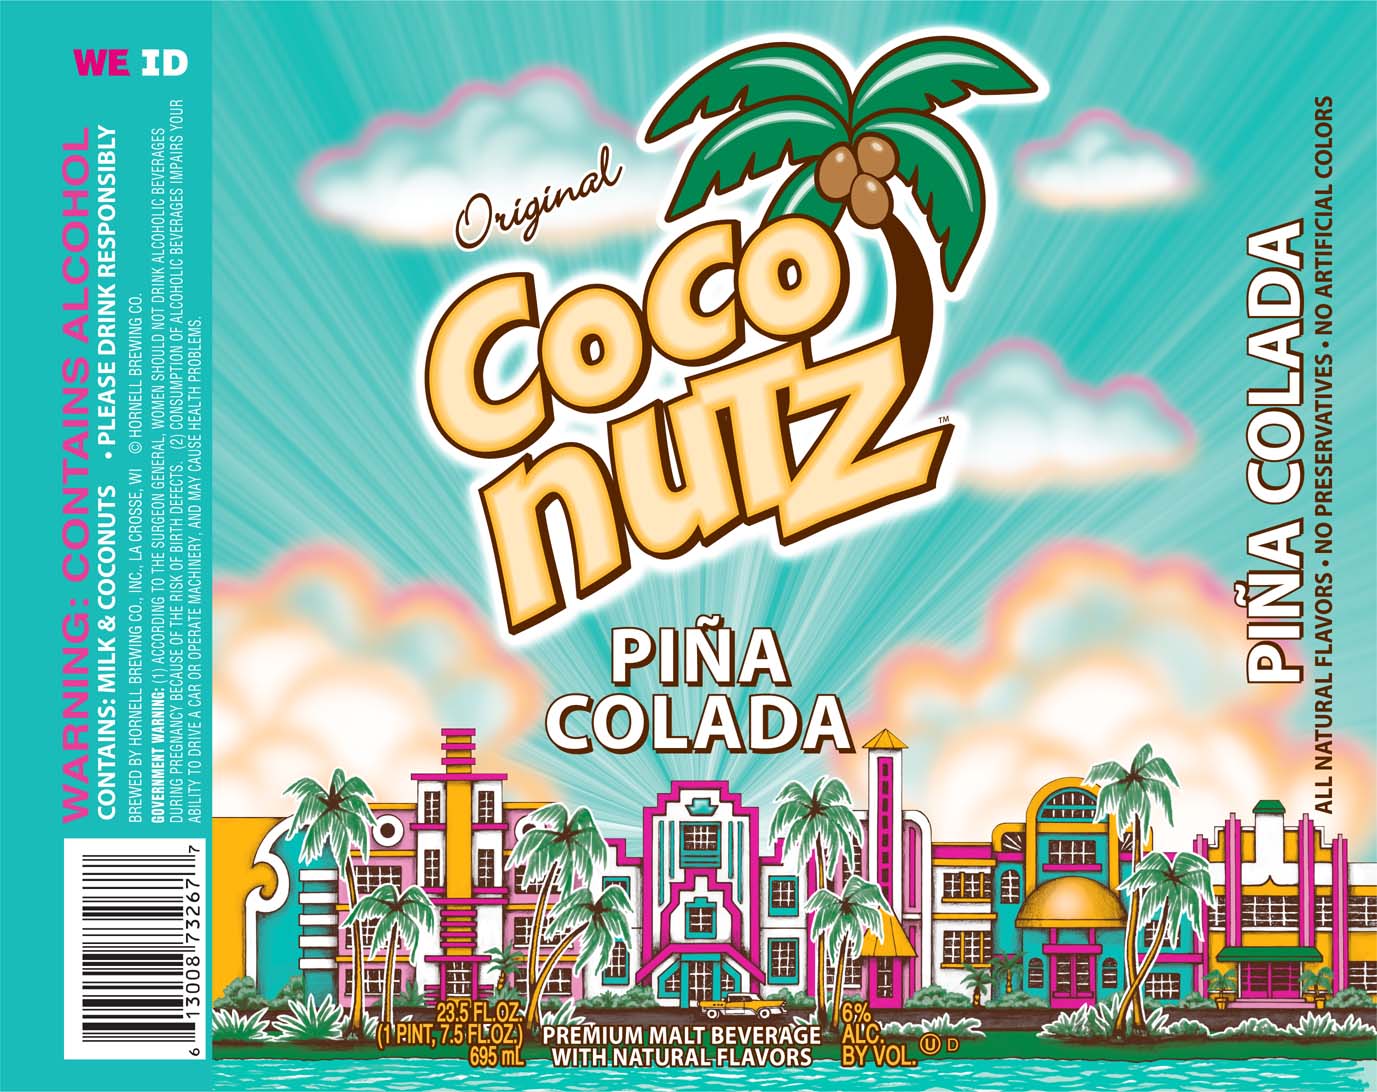 Coco Nutz